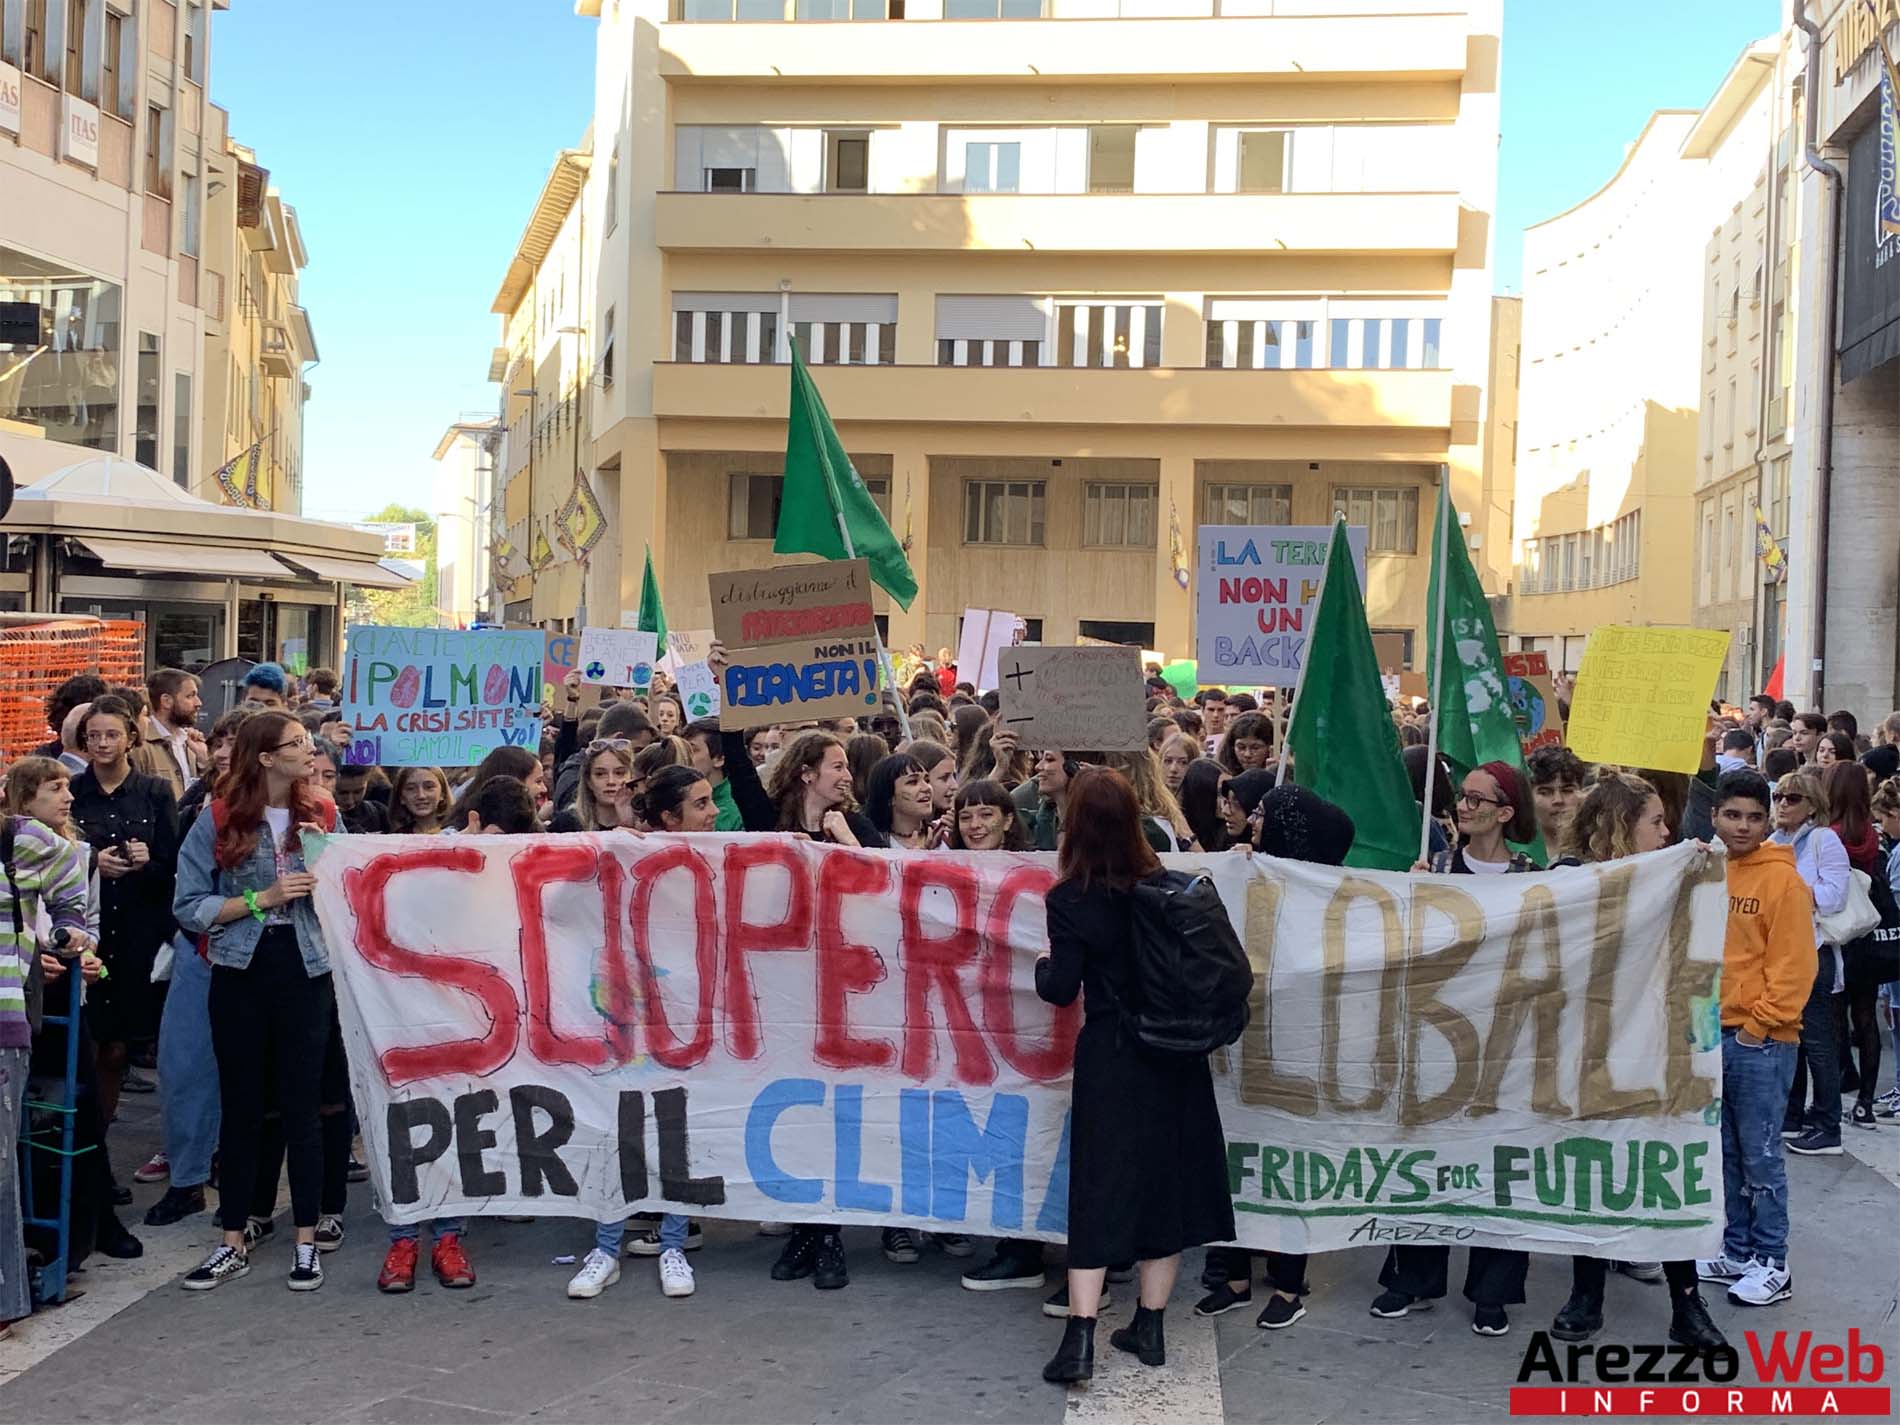 In centinaia allo sciopero per il clima. “Ci avete rotto i polmoni”, Arezzo fa sentire la sua voce in difesa del pianeta